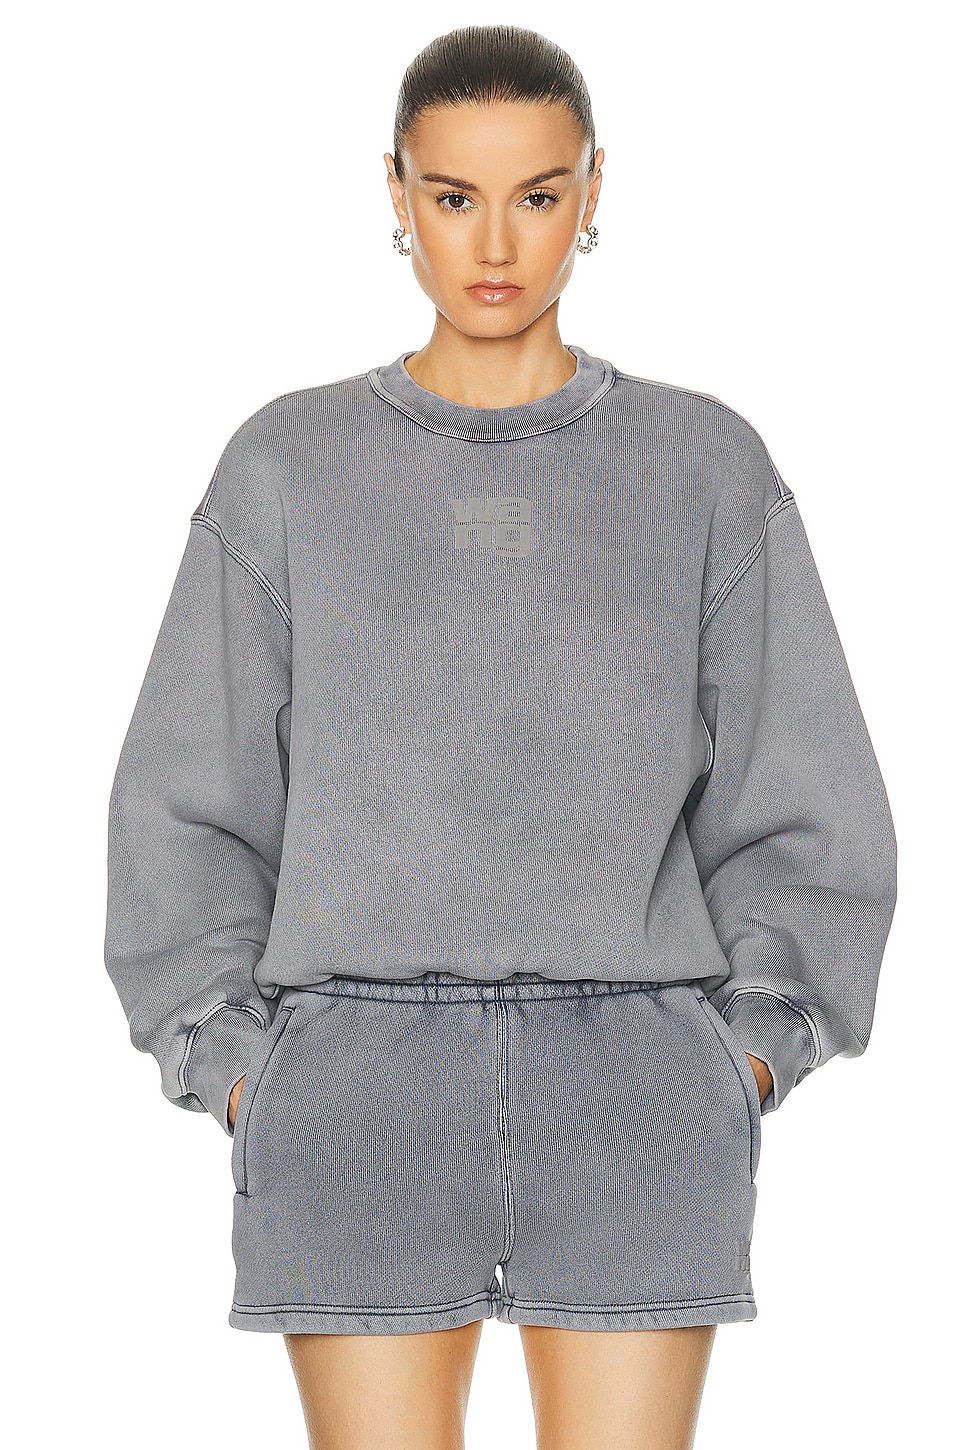 Designer Hoodies and Sweatshirts for Women | Zip-Ups, Black